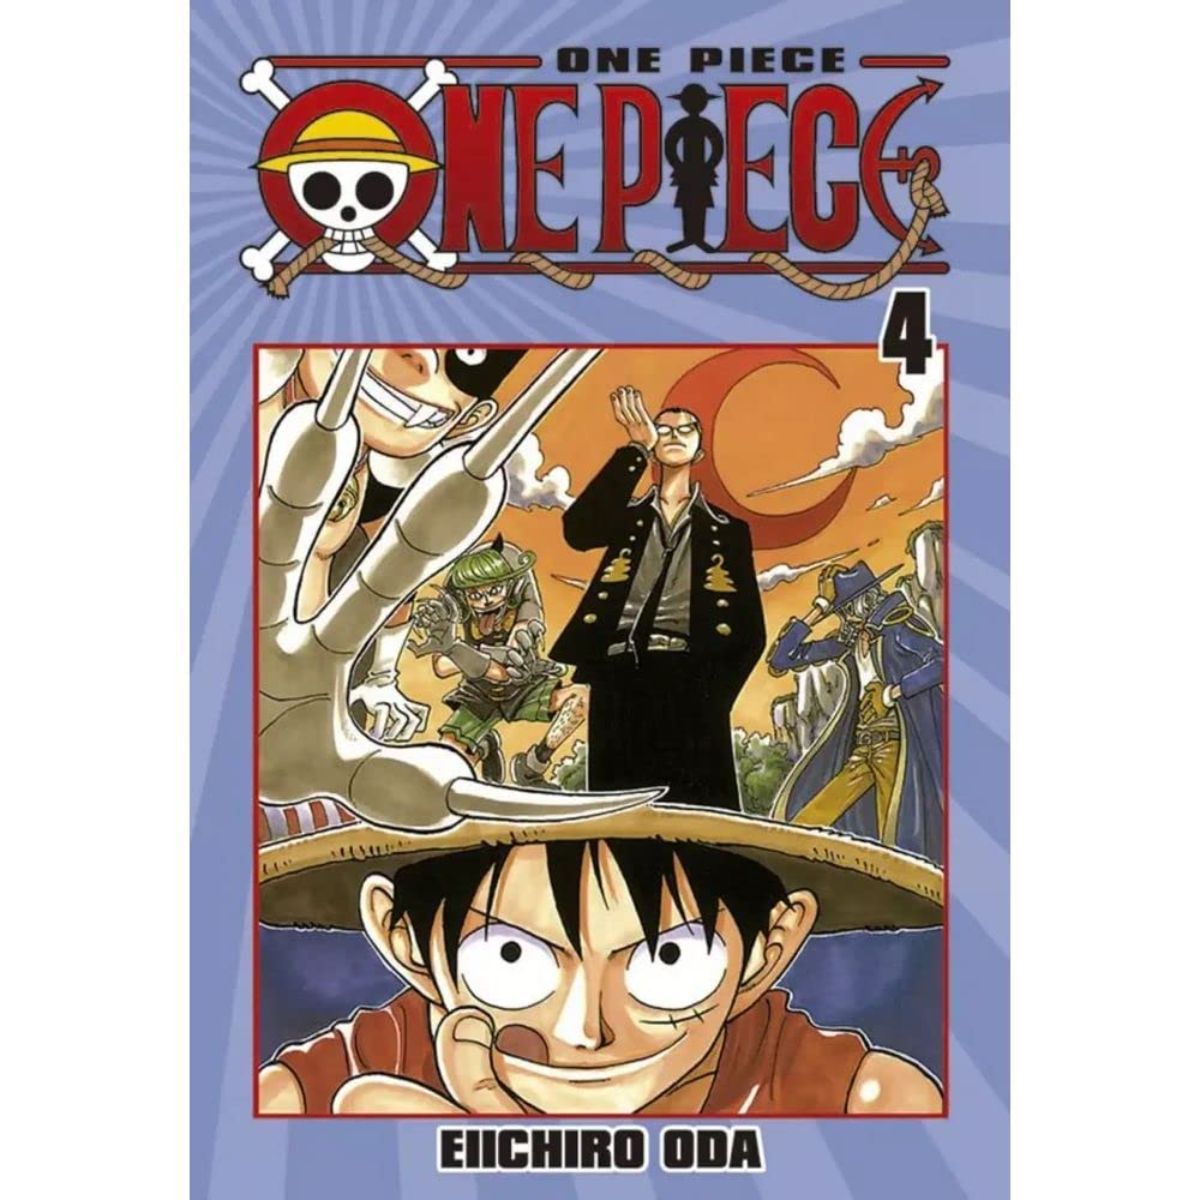 10 Melhores Livros de Aventura Similares a One Piece